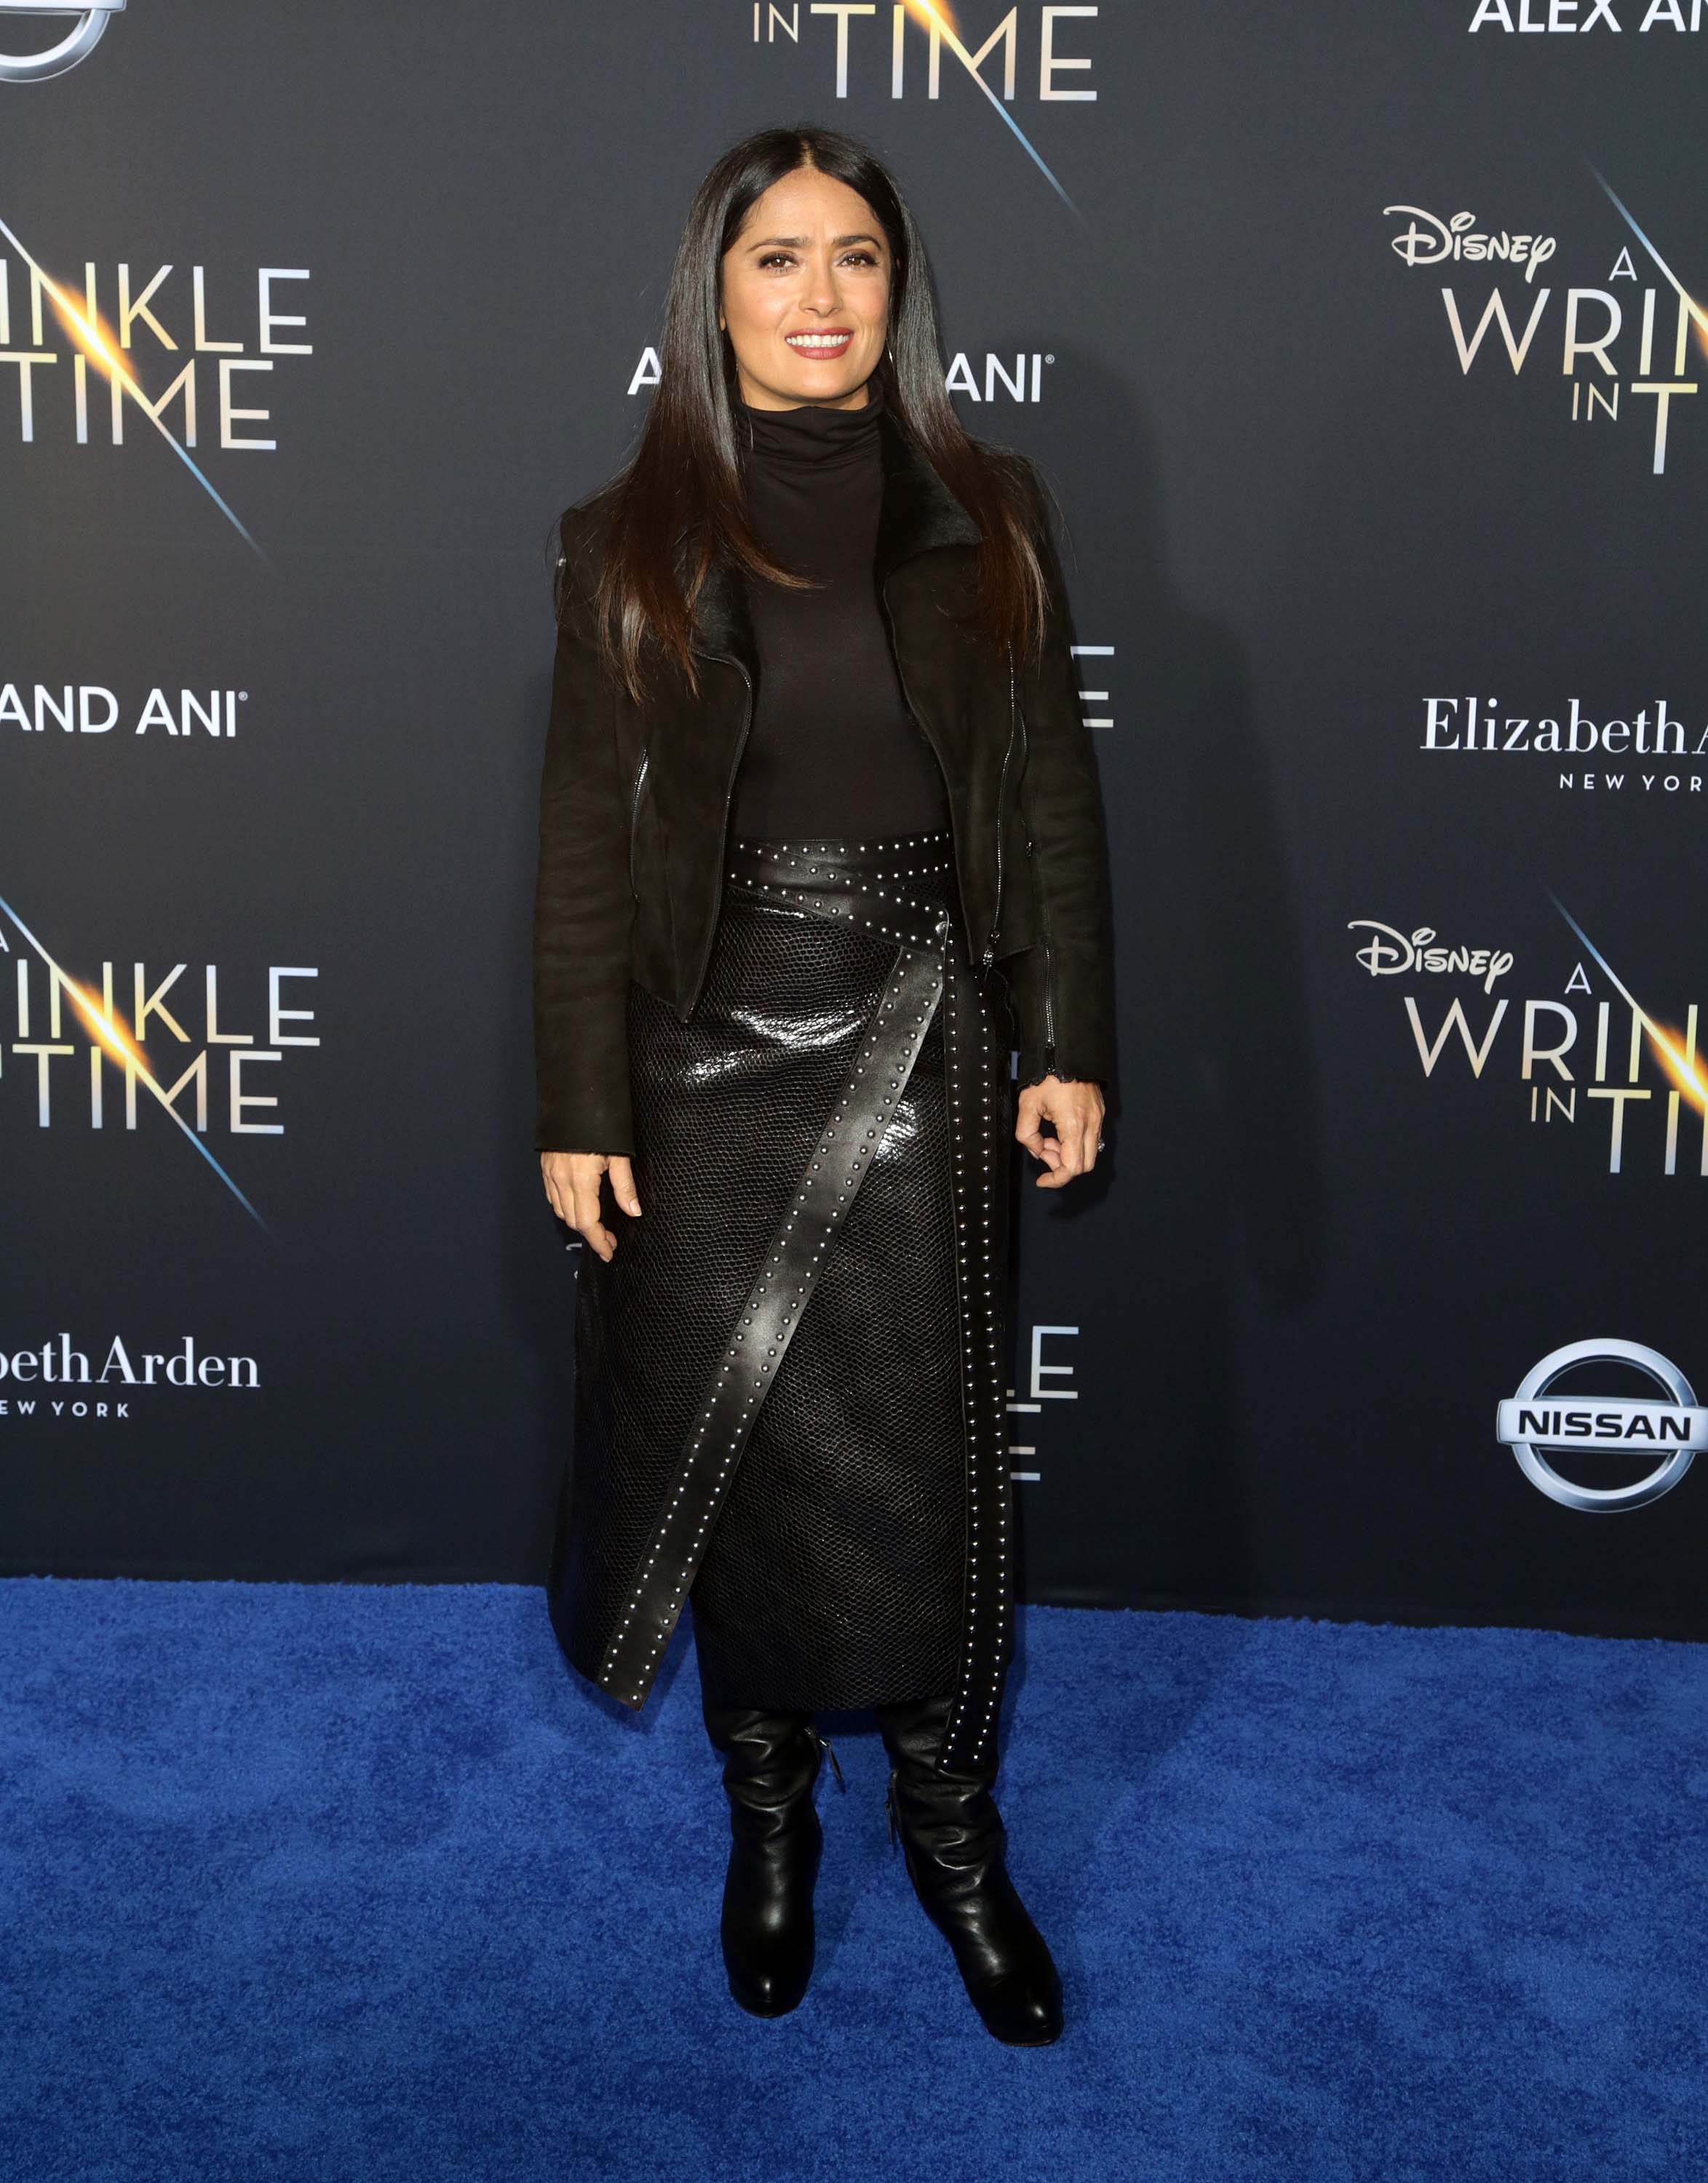 Salma Hayek attends A Wrinkle in Time Premiere